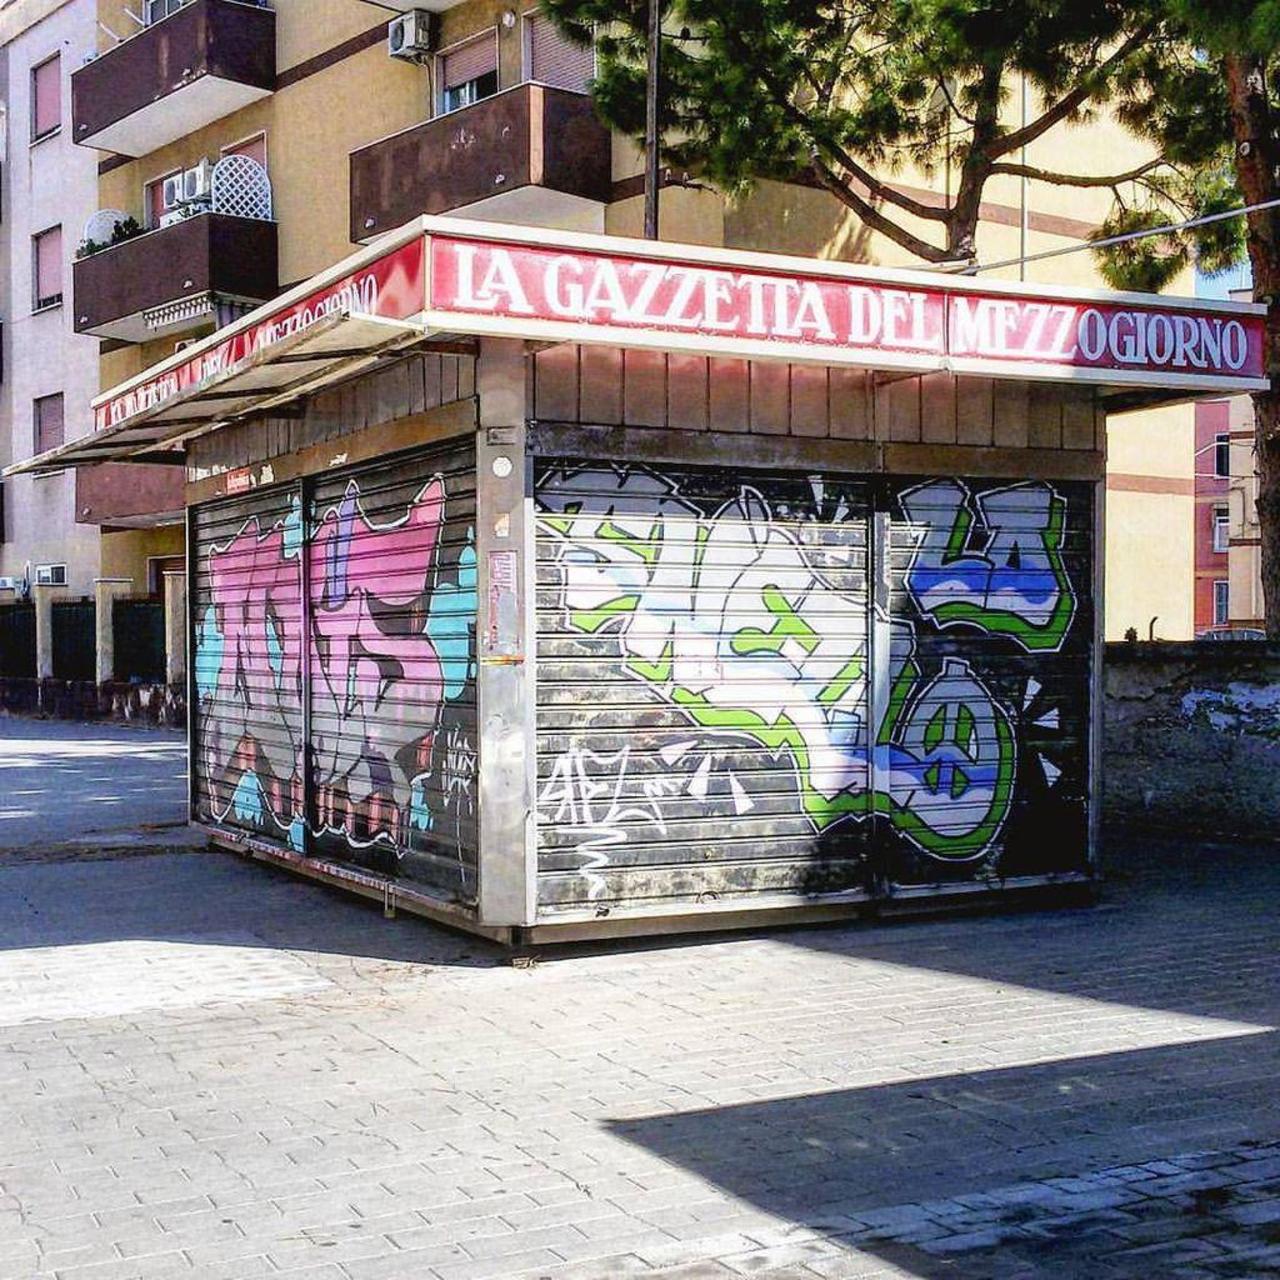 #bari #puglia #italy #italia #edicola #art #streetart #urban #urbanart #graffiti #murales … http://ift.tt/1Mjbl7I http://t.co/LTYO8q6B0X